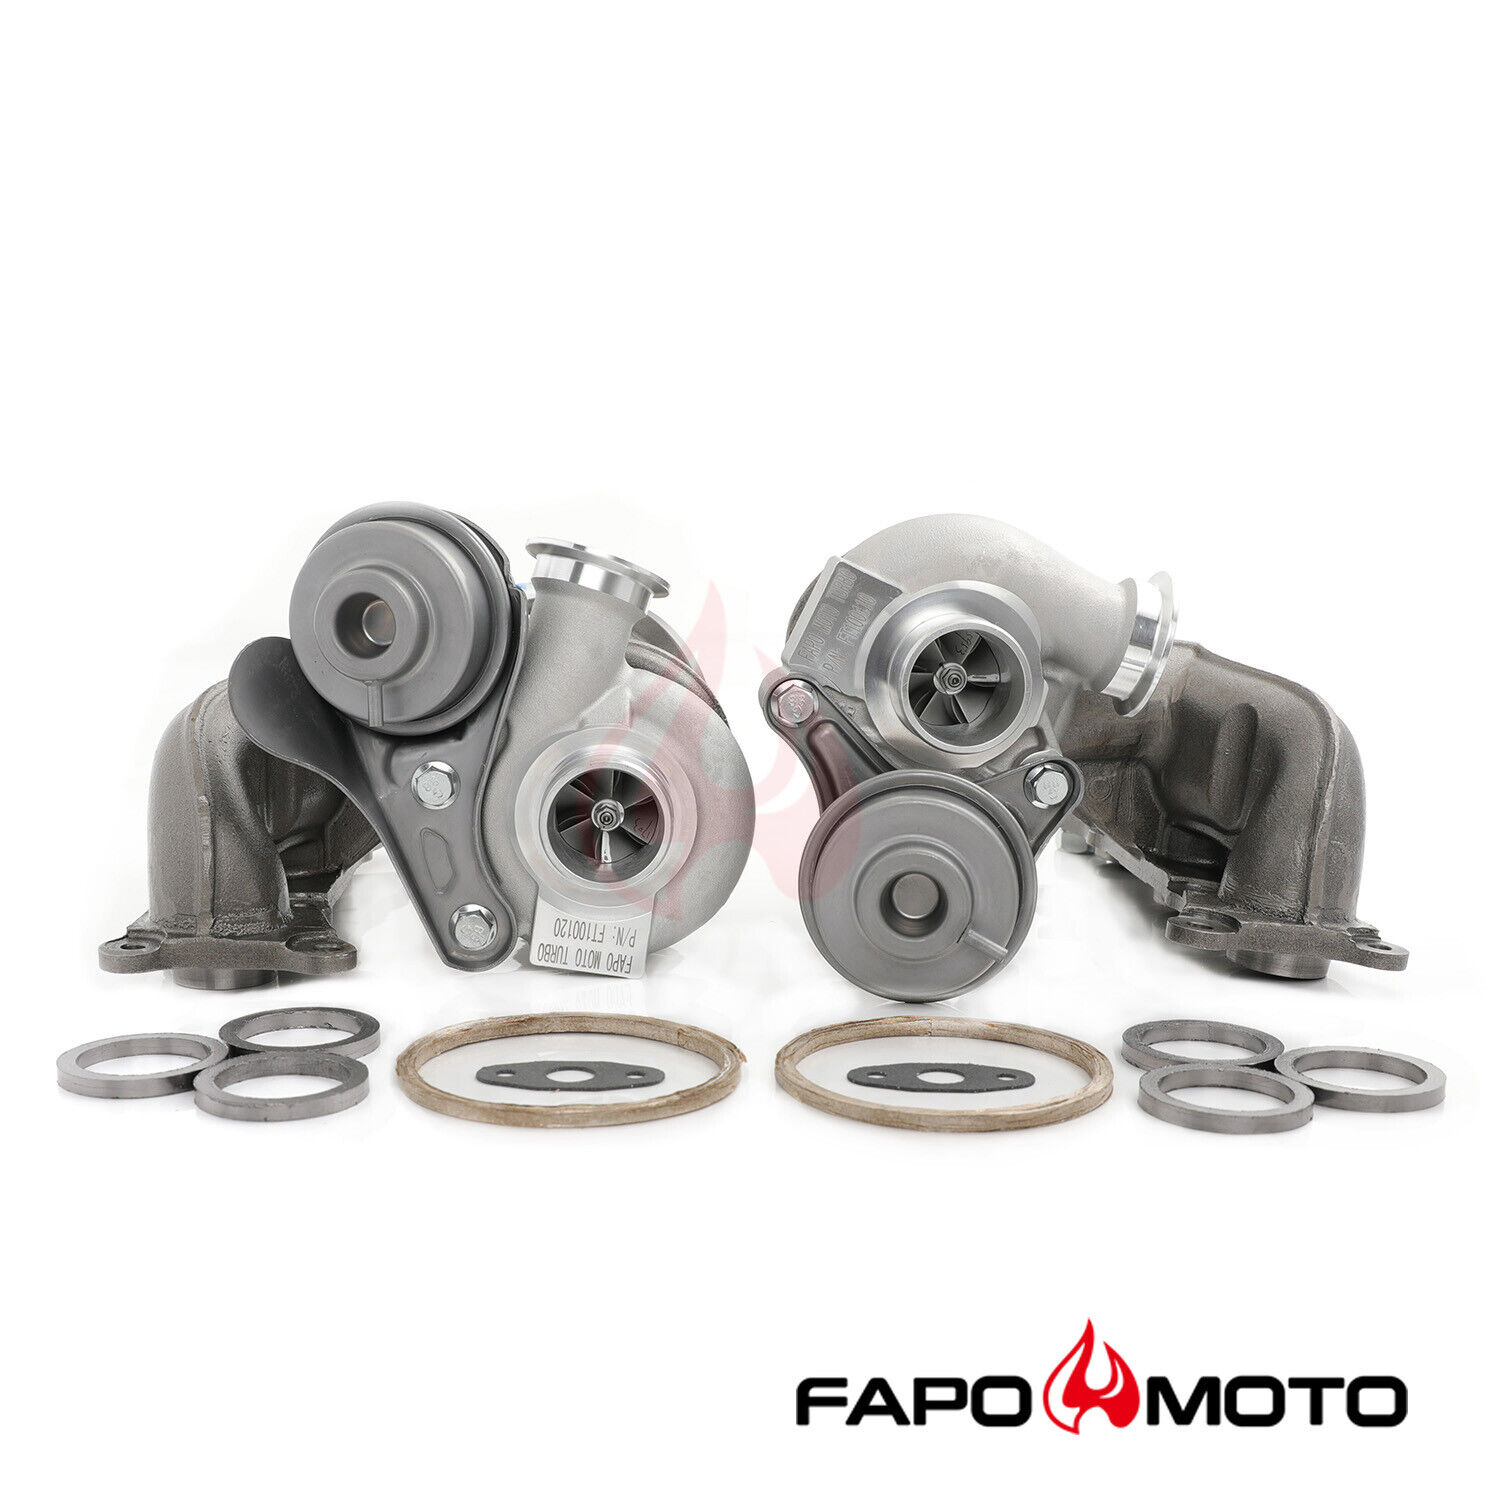 FAPO 500HP Twin Turbos TD03 for BMW N54 335i 335xi 335is E90 E92 E93 OE design